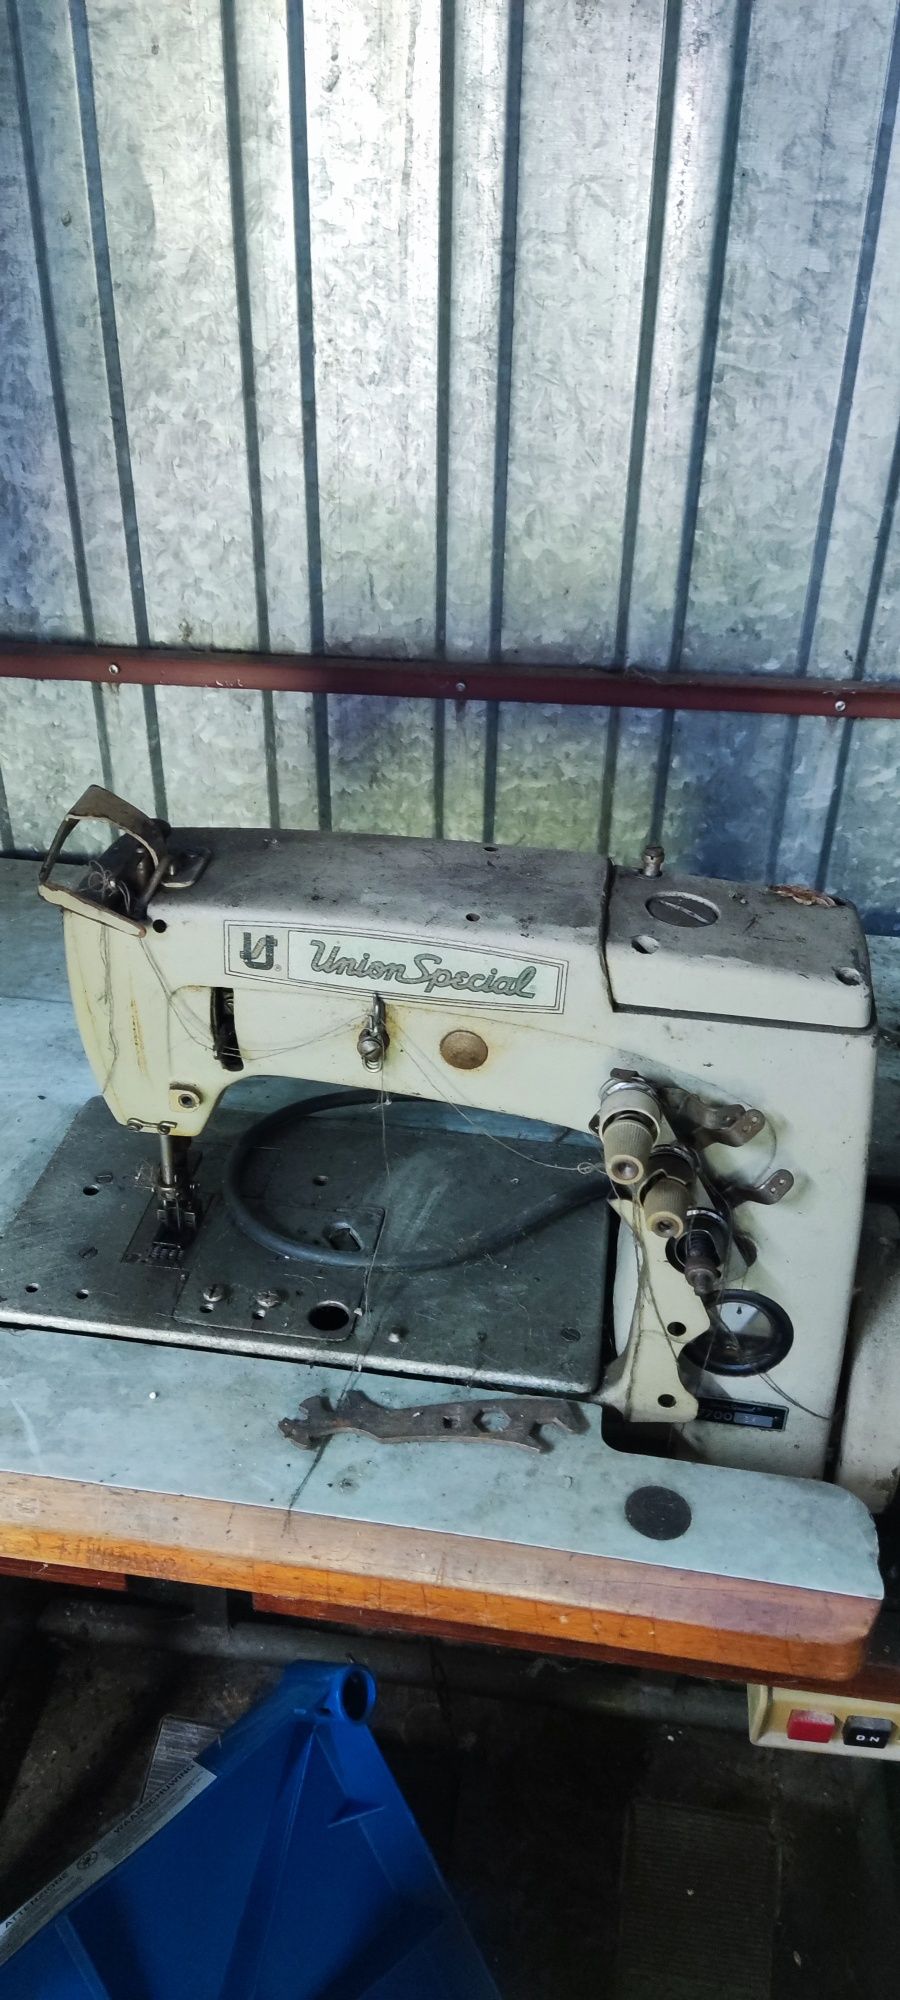 Stare maszyny + Parownica (Z blatami na stoliki) Solidne